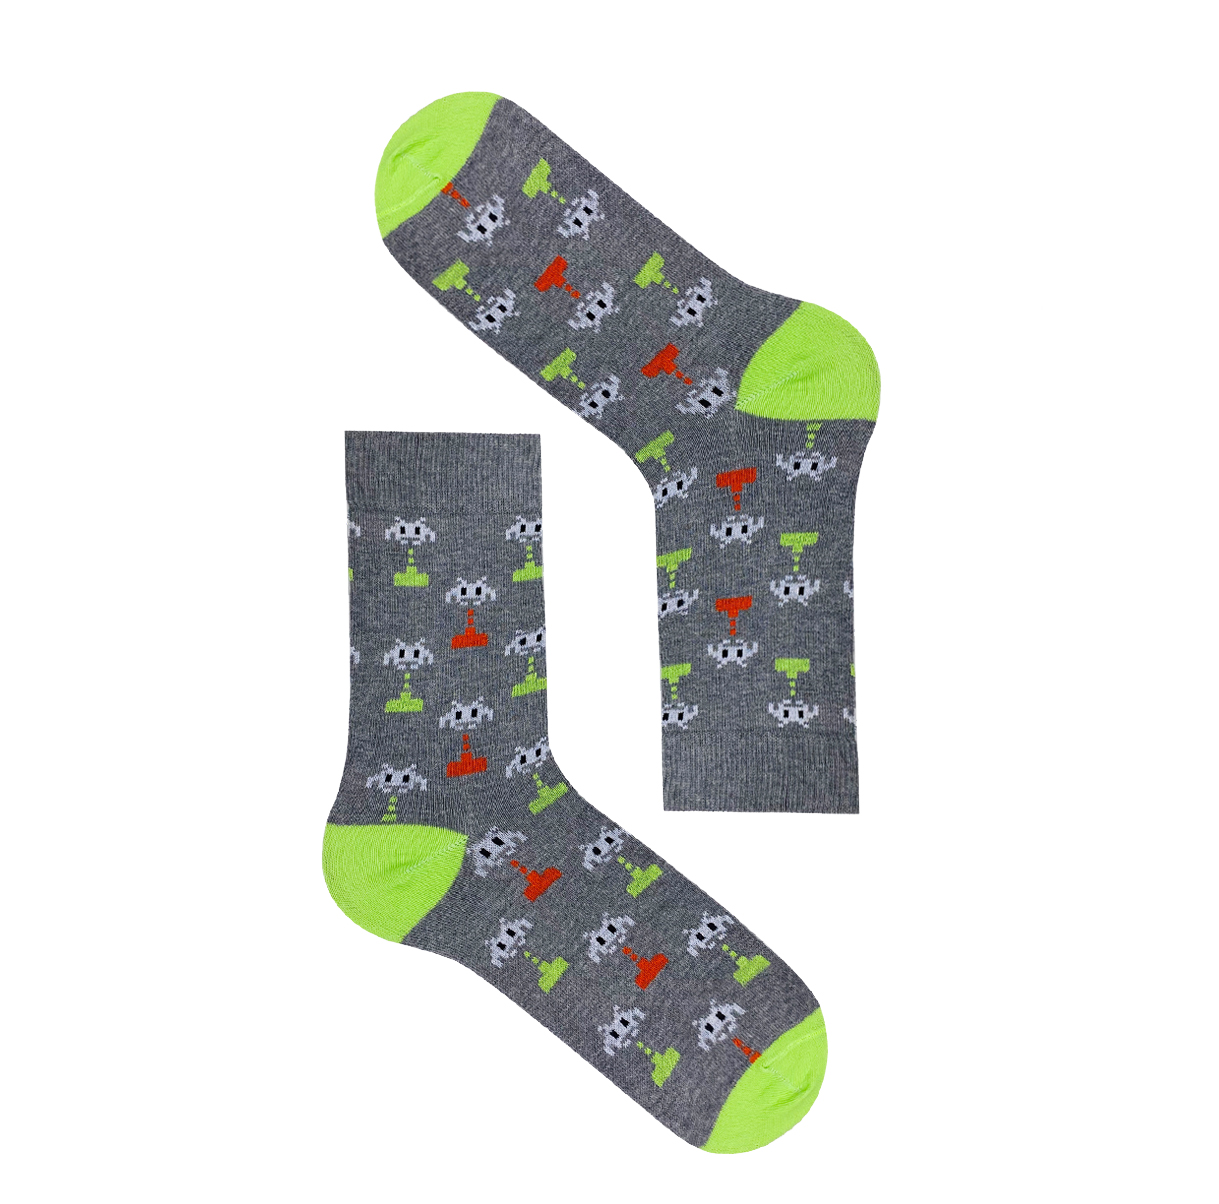 Men's Gaming Socks Gift Set - 2 Pairs